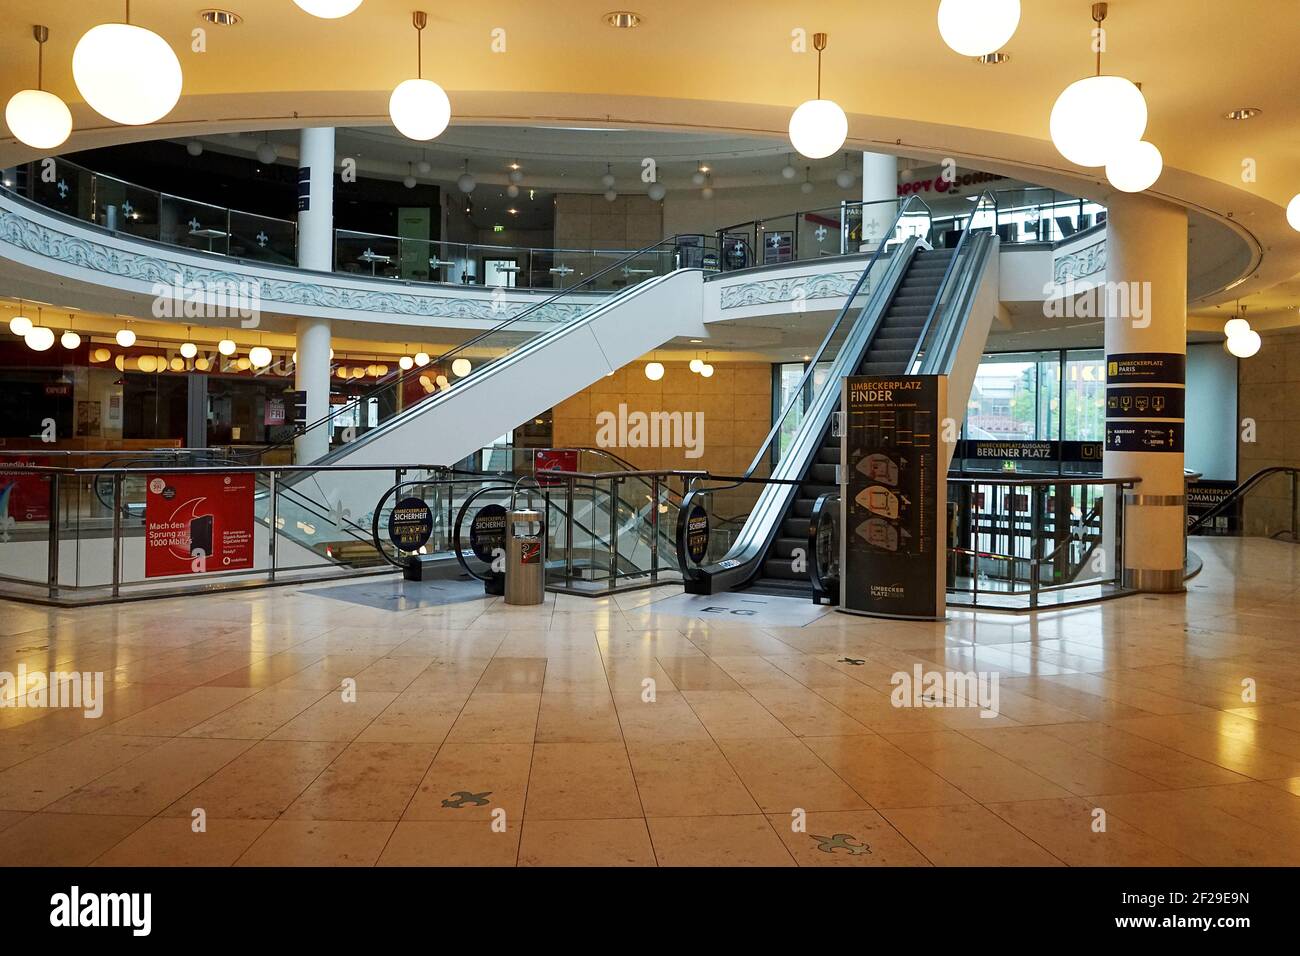 Die Innenstadt, Einkaufszentrum in Essen Stadtmitte ist leer ohne Kunden, NRW, Deutschland, Europa, April 2020, Falscher Virenalarm schadet der Wirtschaftlichkeit. Stockfoto